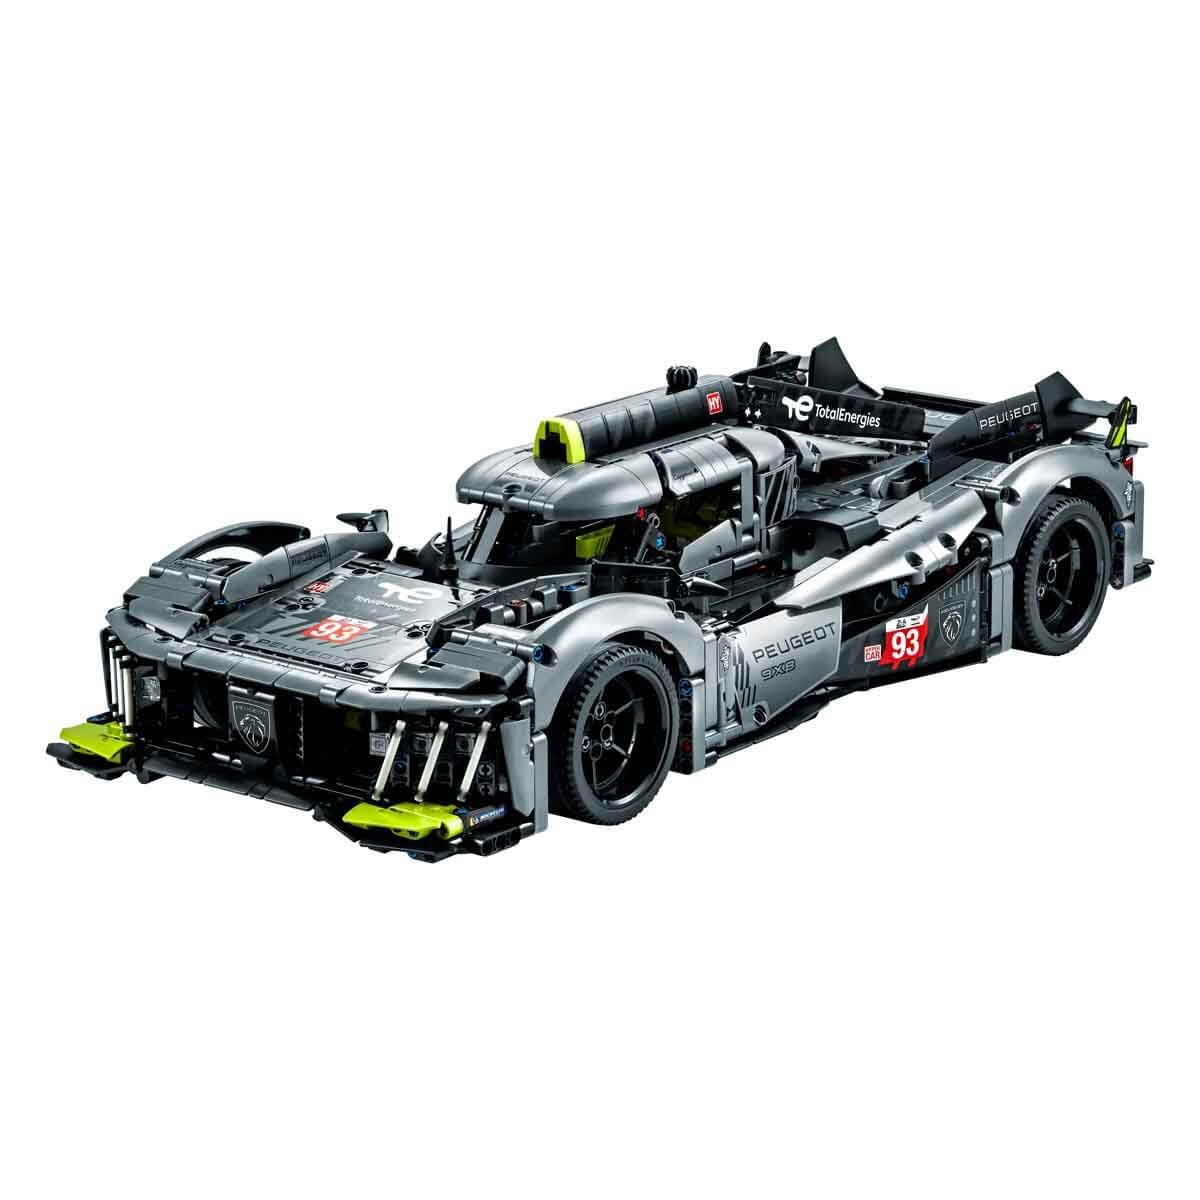 LEGO Technic Peugeot 9X8 24H Le Mans Hybrid Hypercar 42156 Building Kit (1,775 Pieces),Multicolor